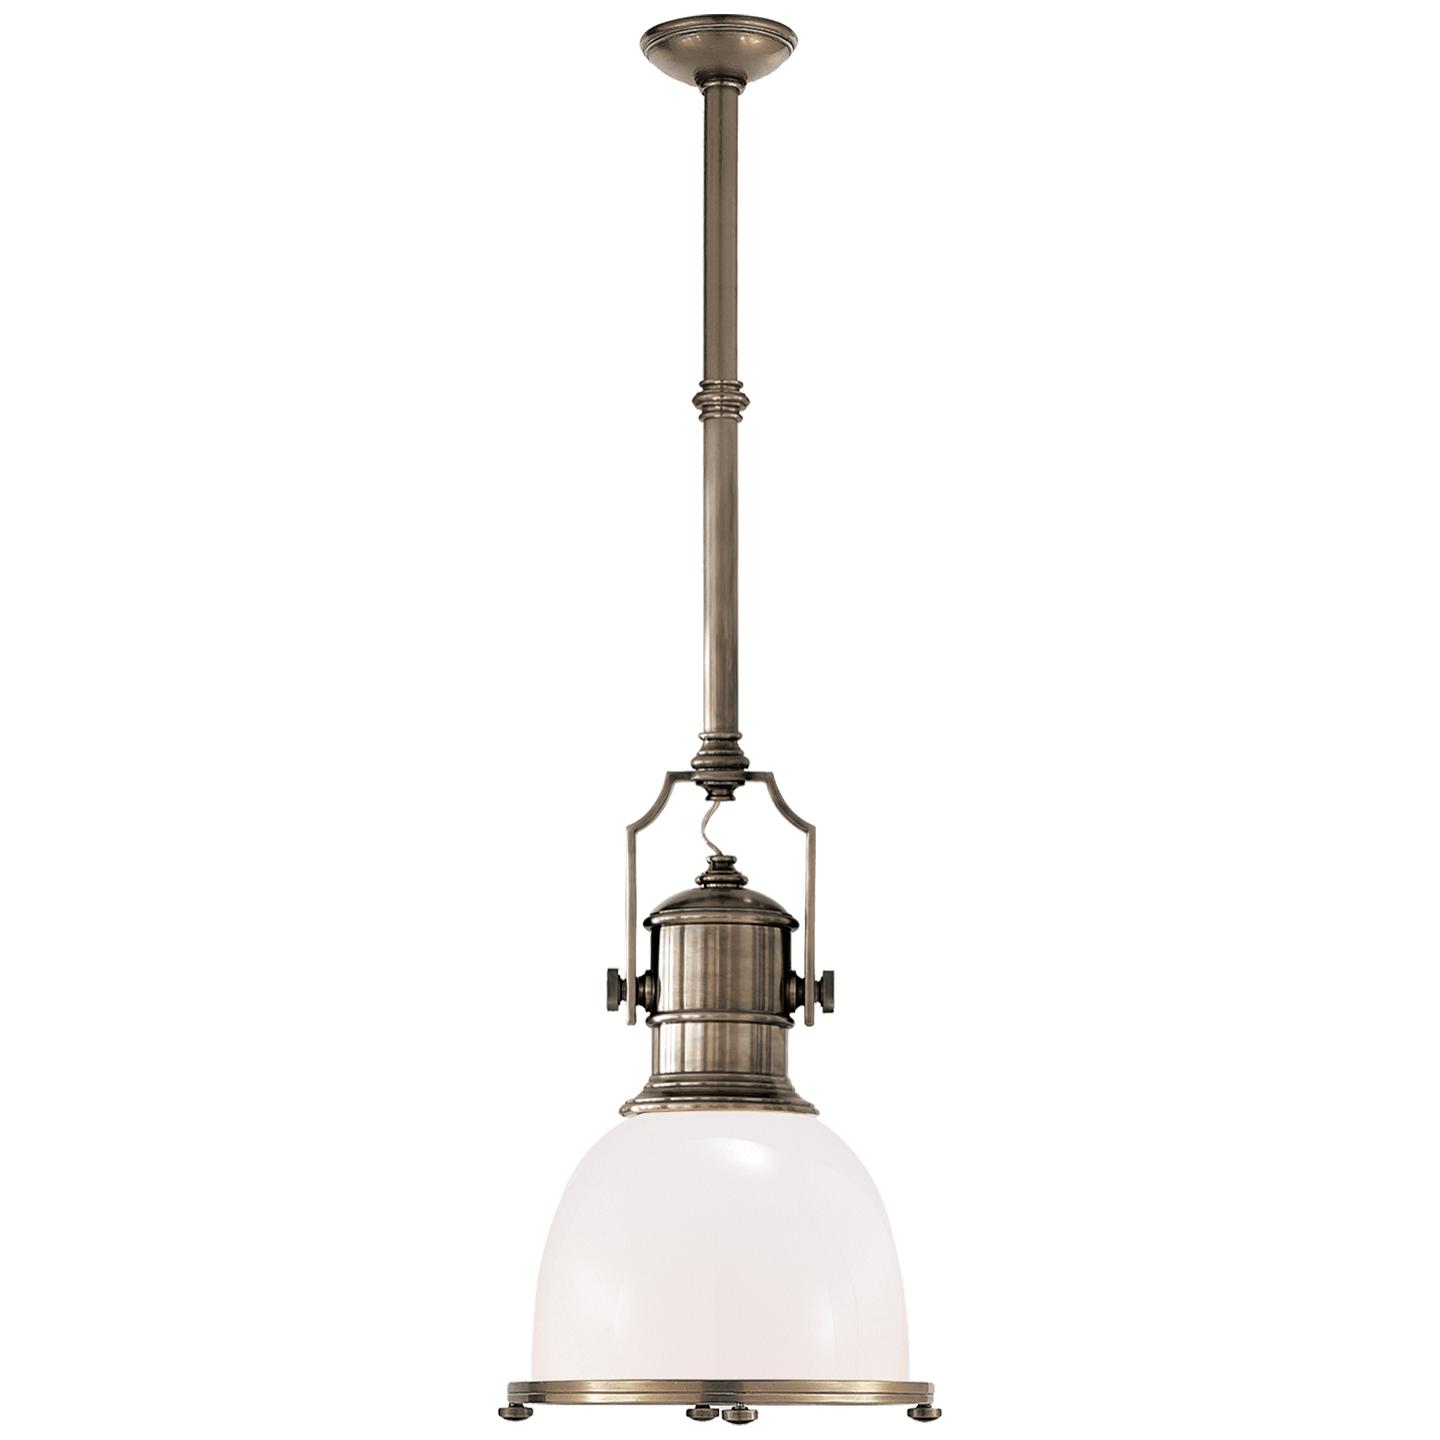 Купить Подвесной светильник Country Industrial Small Pendant в интернет-магазине roooms.ru